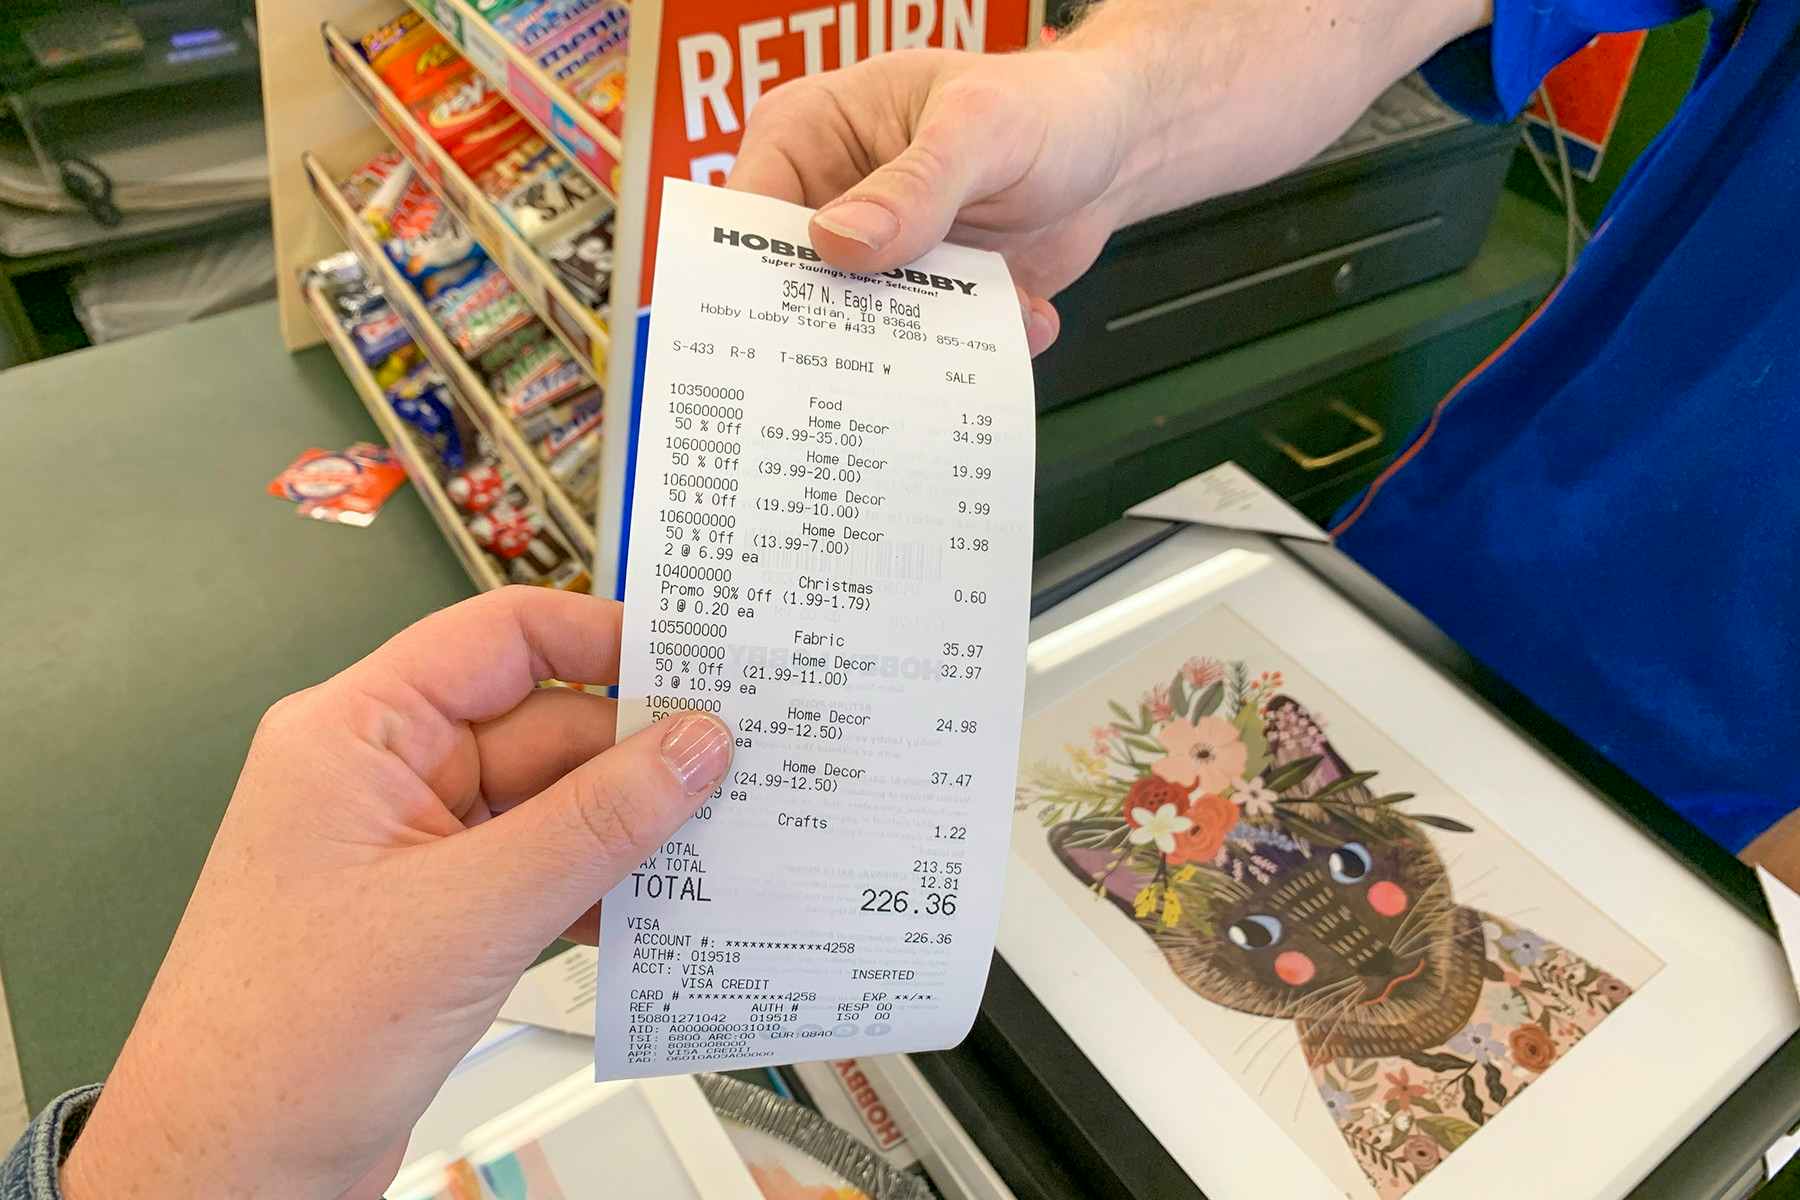 An employee handing a receipt back to a customer.